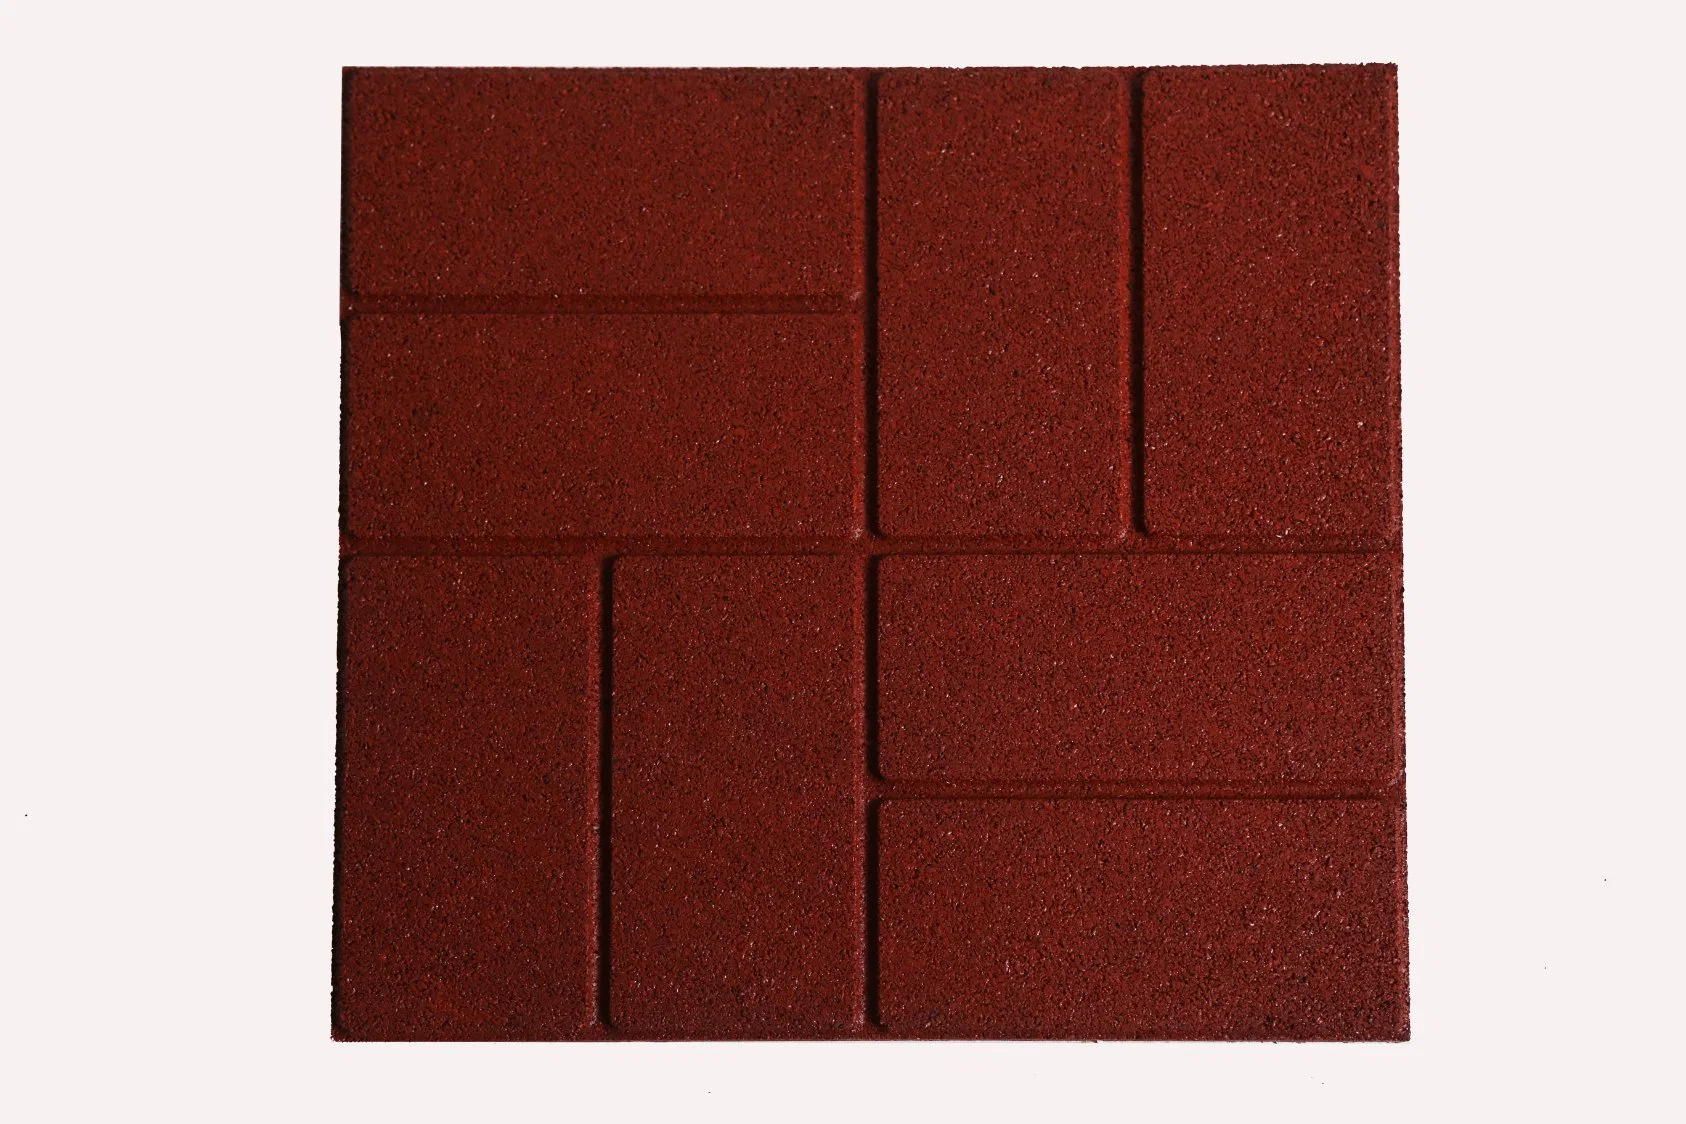 400X400mm Brick Rubber Floor Tiles New Design Garden Floor Tiles, Outdoor Basketball Court Flooring for Garden